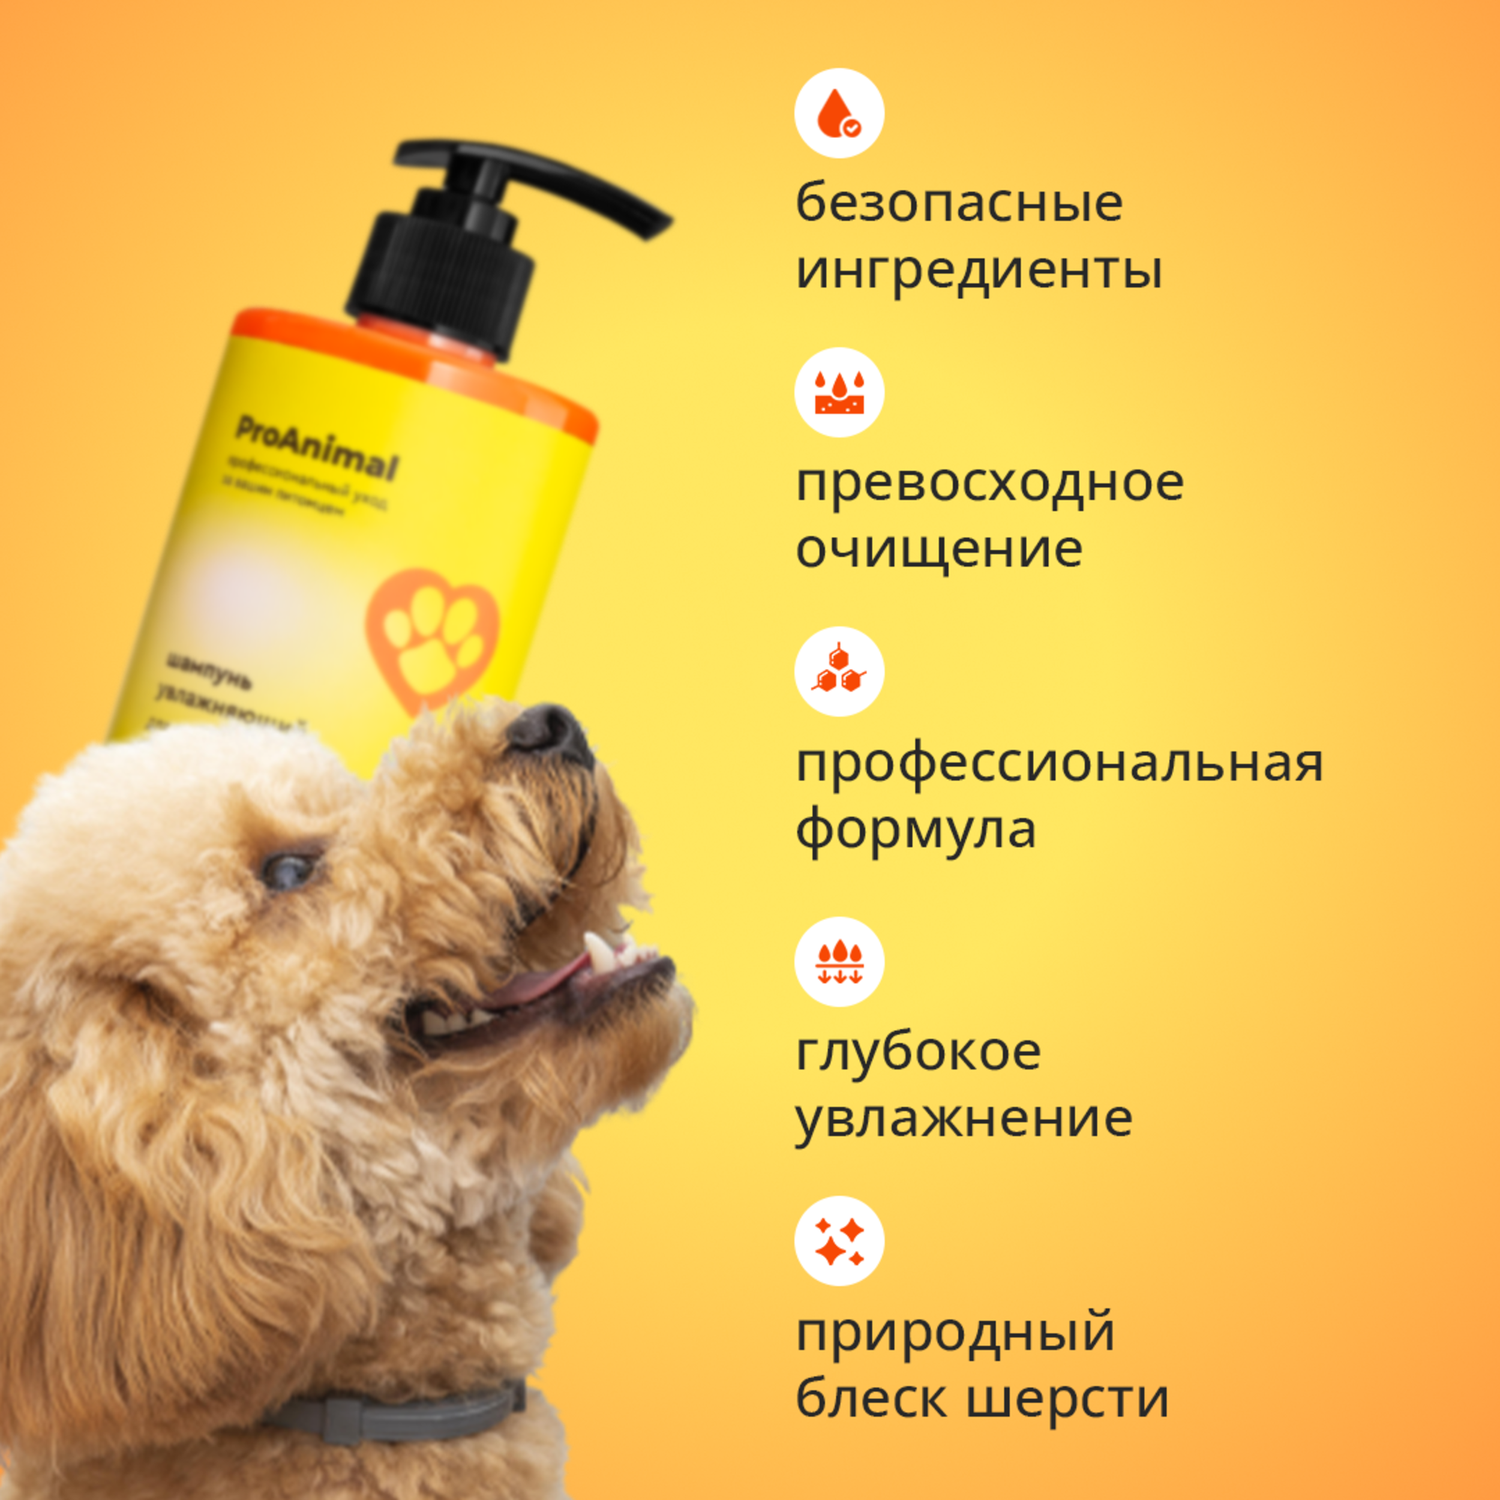 Шампунь с ароматом лимон-лайм ProAnimal универсальный домашний увлажняющий для собак - фото 4